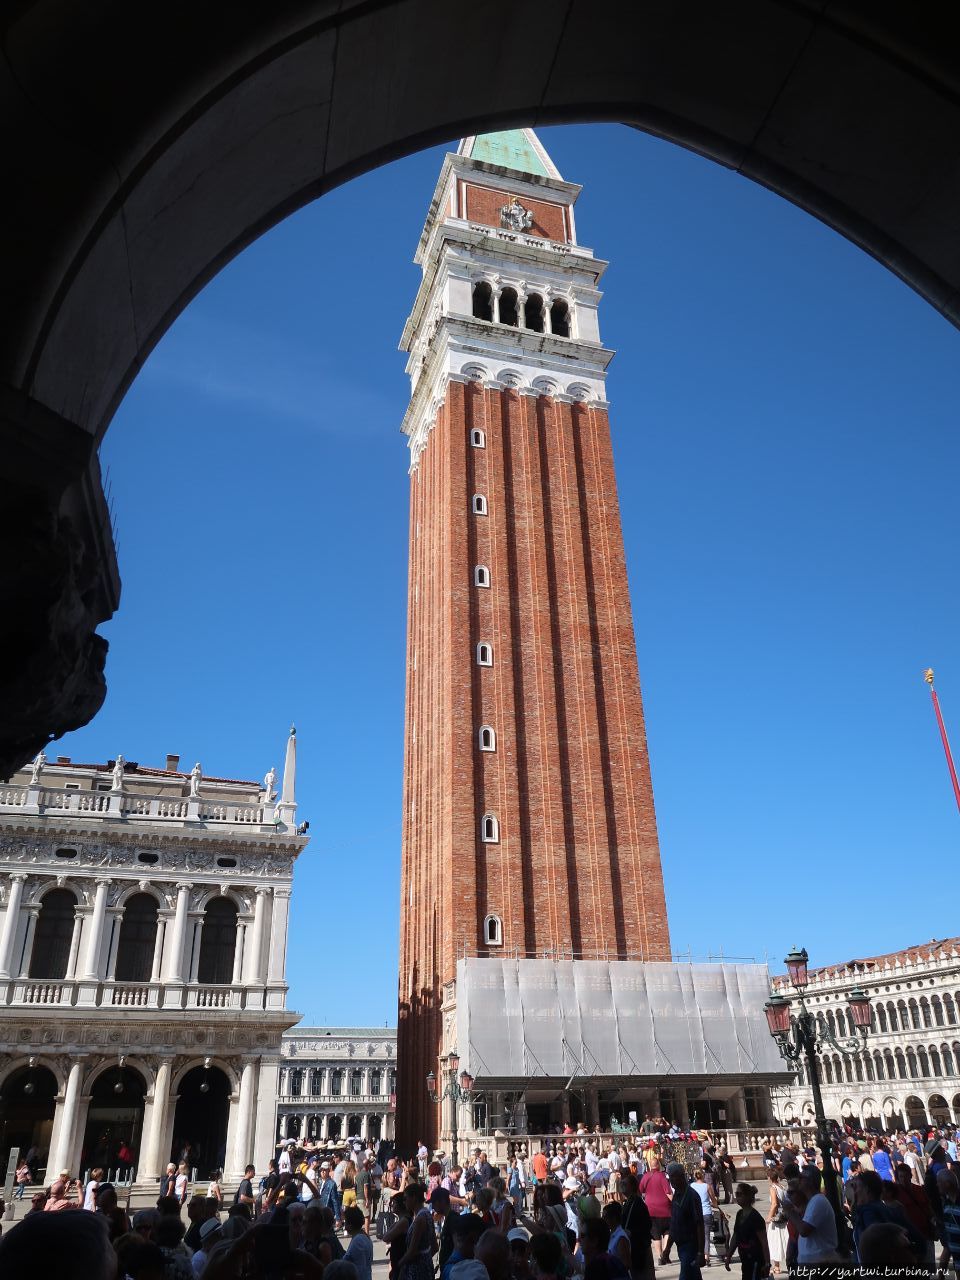 Ожидаем гида под арками (верхняя массивная часть Дворца дожей покоится на лёгких ажурных арках) с видом на колокольную башню (кампанилу) при соборе Святого Марка в Венеции и отправляемся на экскурсию. Венеция, Италия